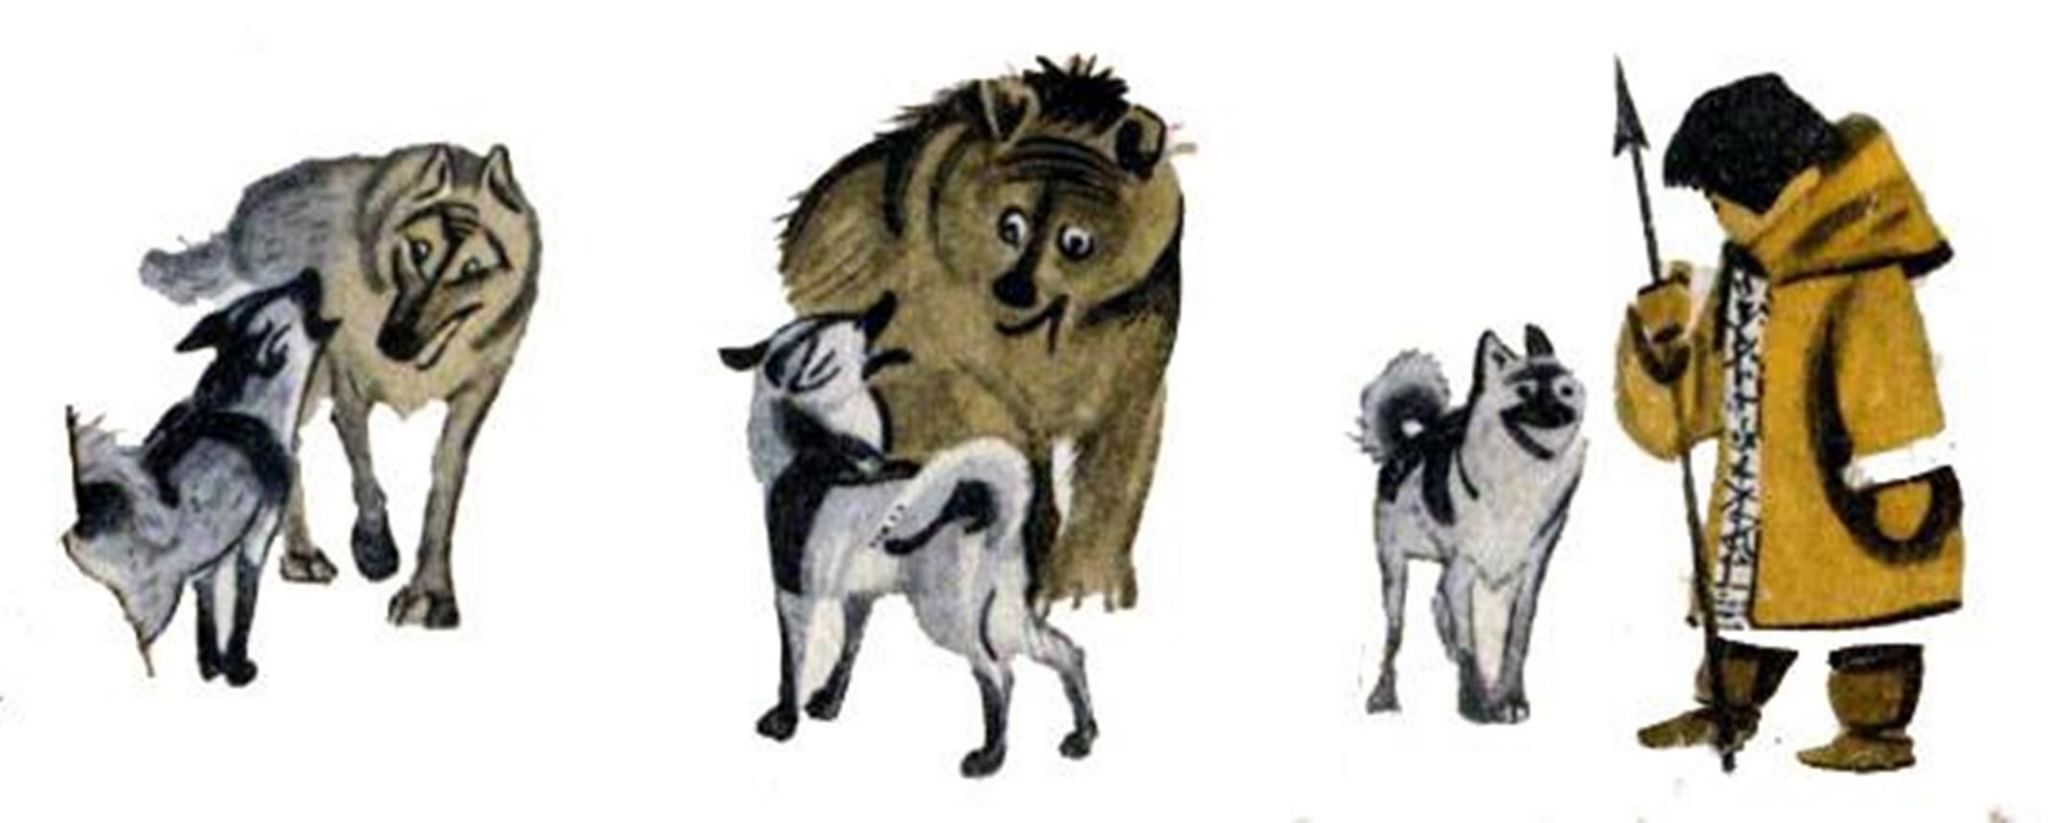 Давным давно жила в лесу собака сказка. Человек и собака Ненецкая сказка. Как собака нашла себе хозяина друга бурятская сказка. Народная Ненецкая сказка человек и собака. Ненецкая сказкачедовек и собака.